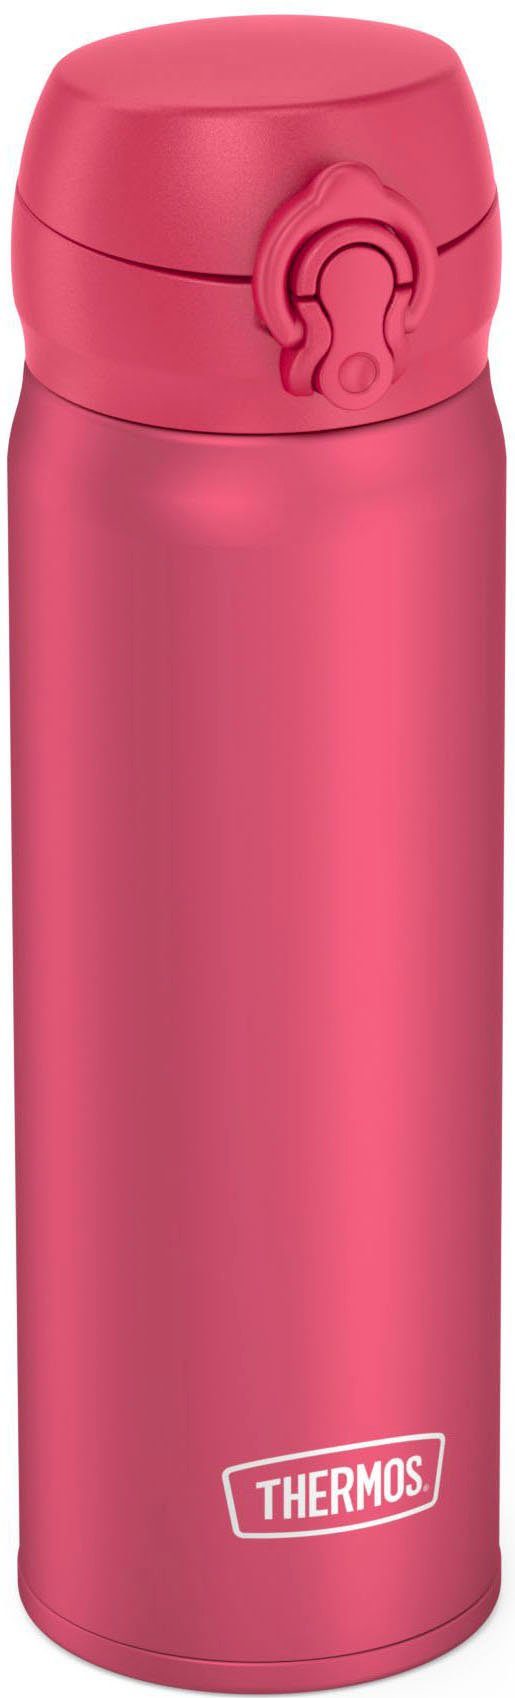 THERMOS Isolierflasche doppelwandiger BOTTLE, mat ULTRALIGHT Edelstahl pink deep